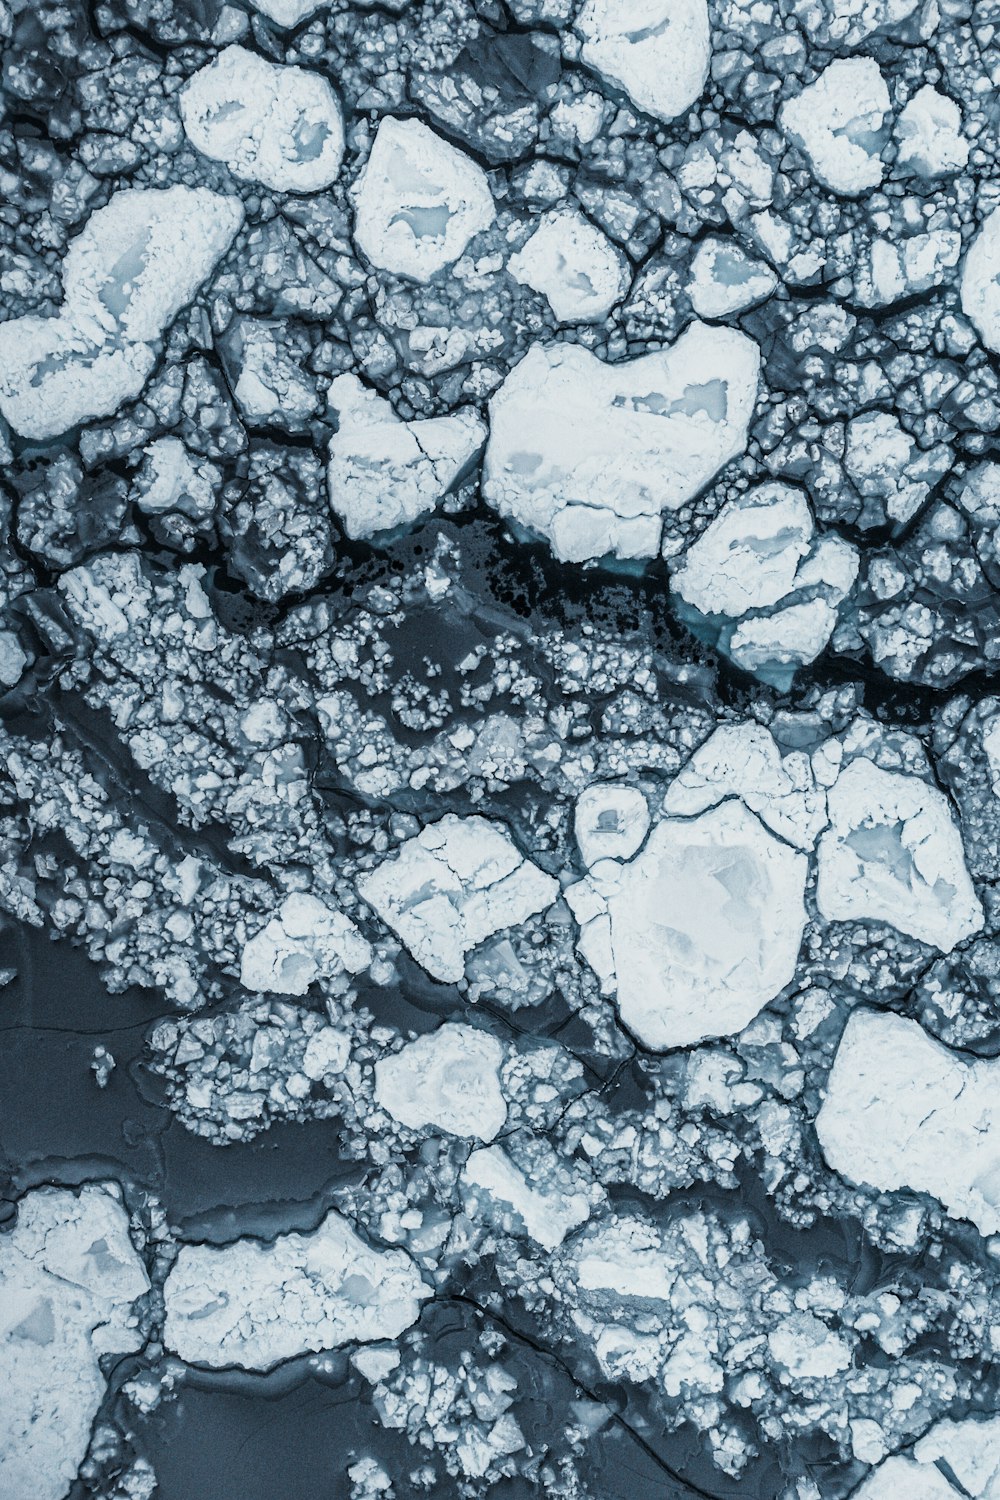 Una vista aérea de témpanos de hielo flotando en el agua